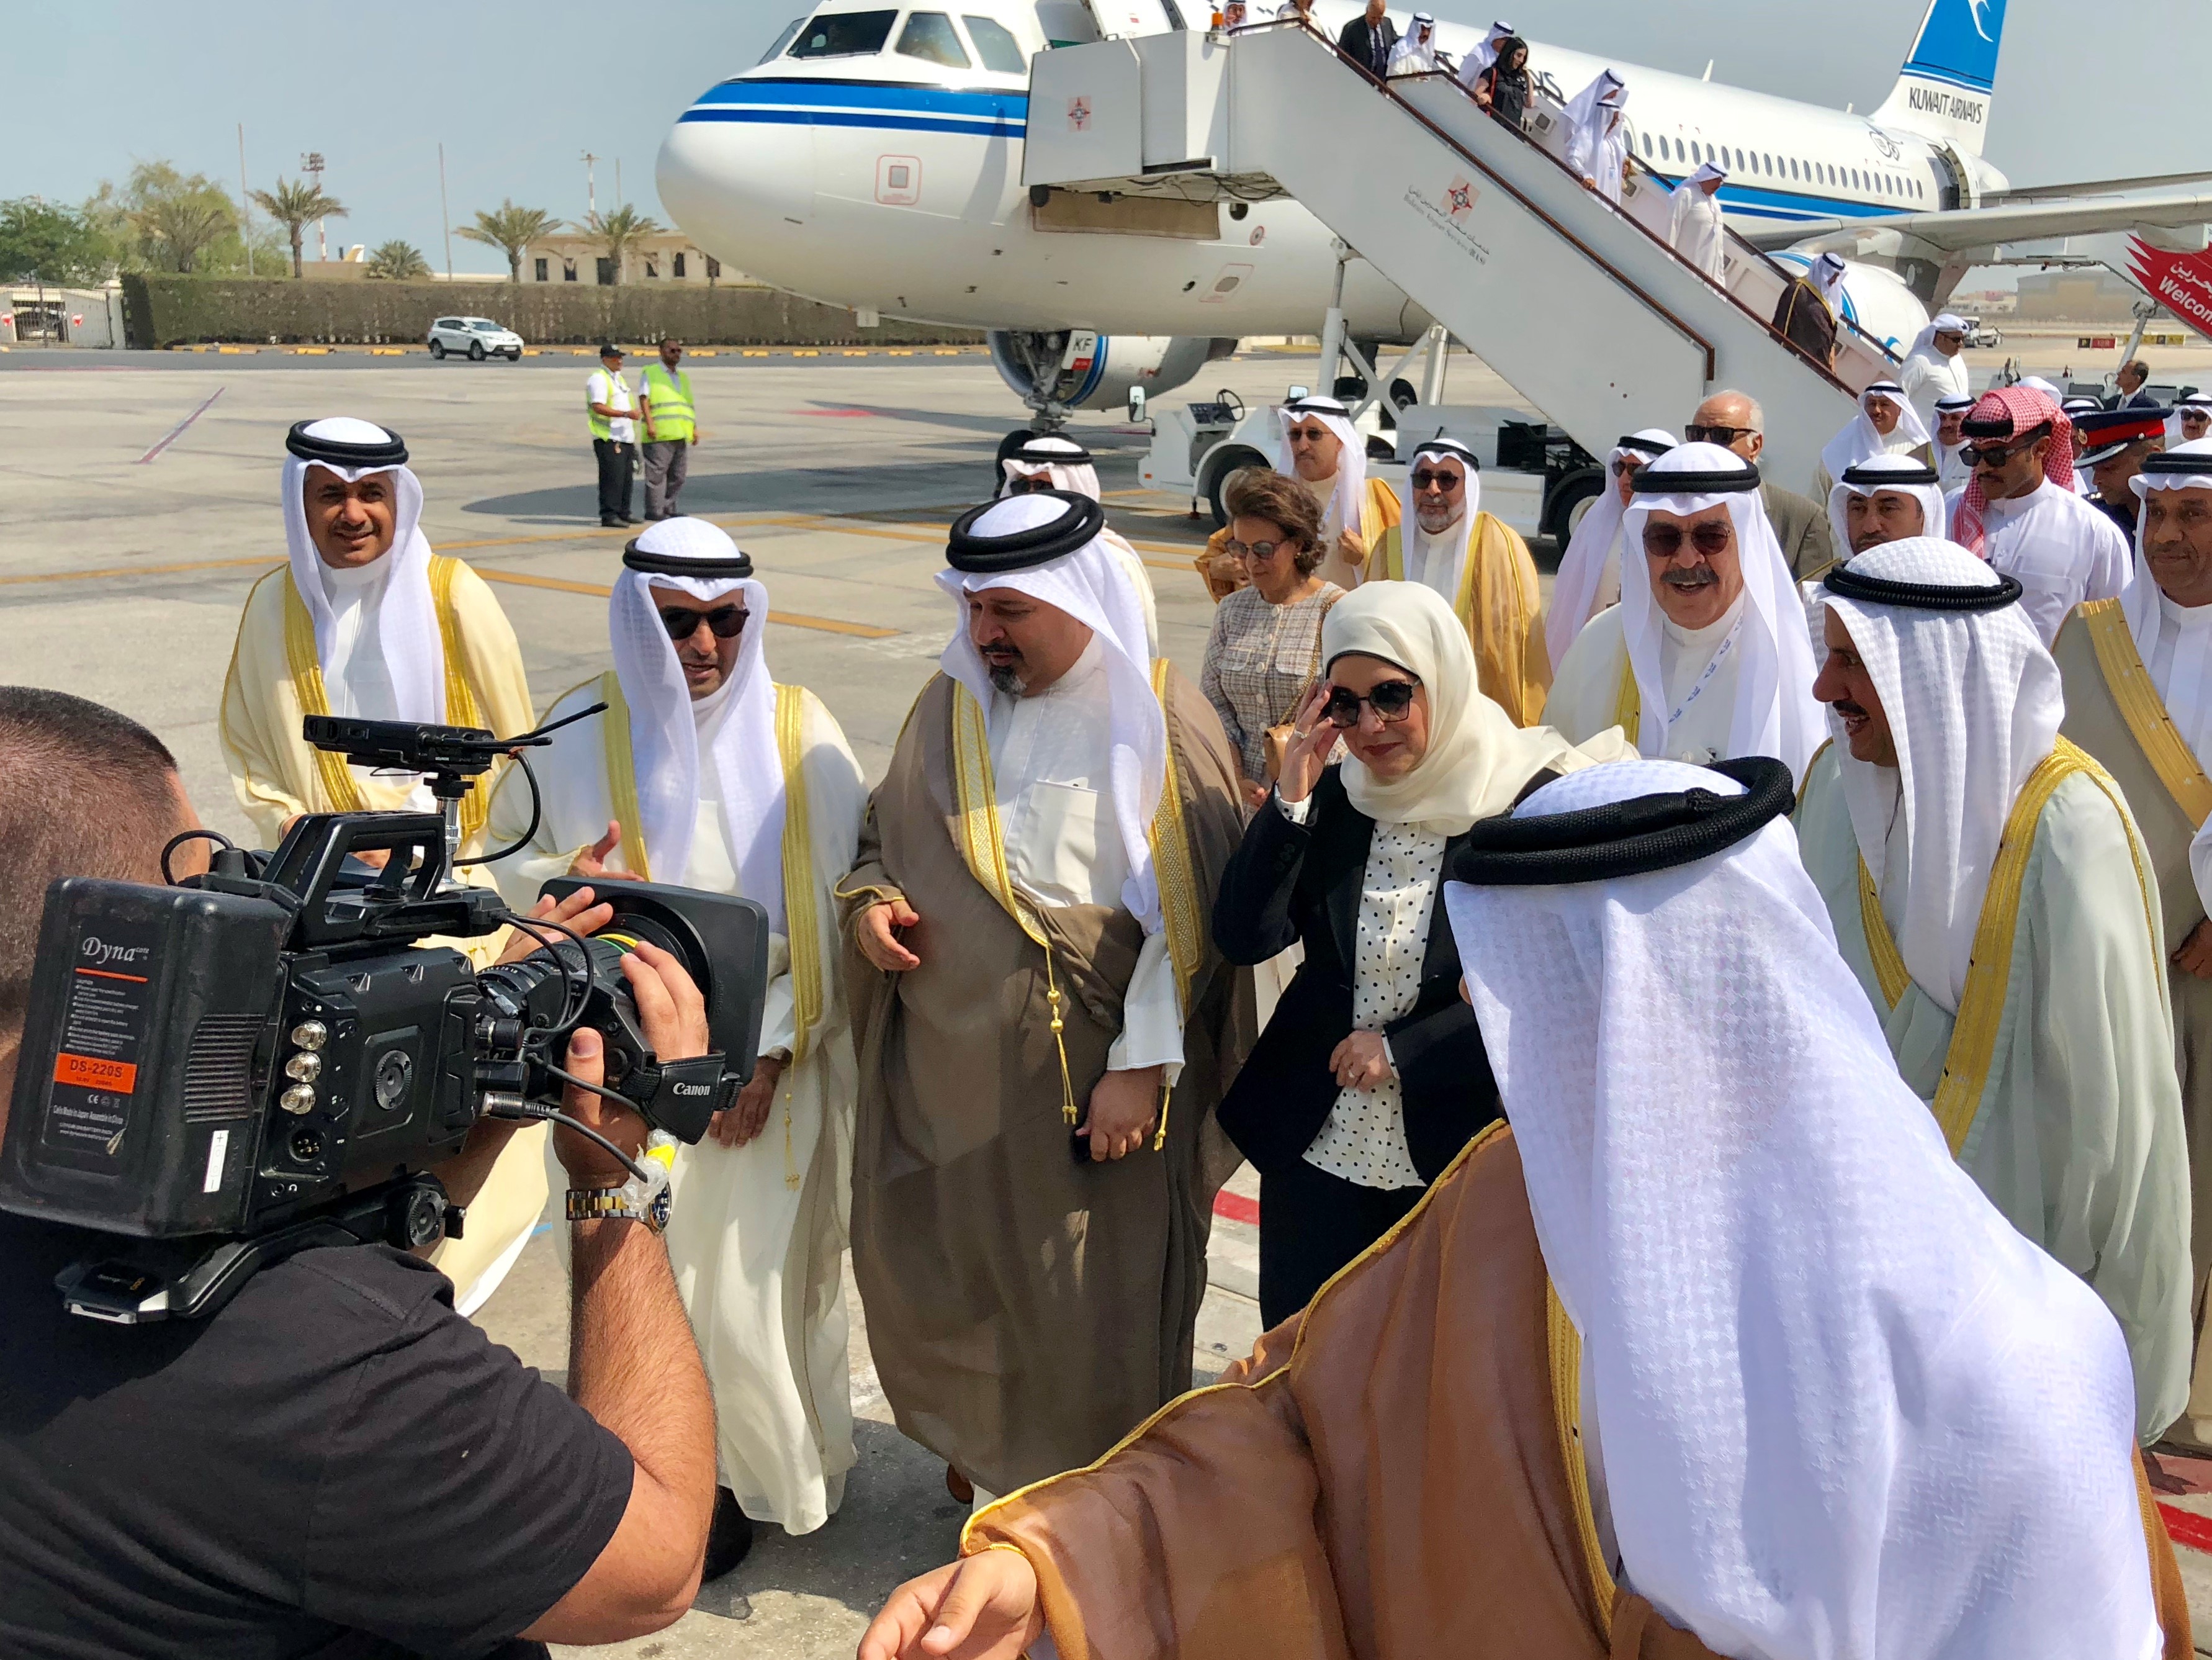 وصول أول طائرة تابعة لشركة الخطوط الجوية الكويتية تقلع من مبنى الركاب الجديد (T4) بمطار الكويت الدولي الى مطار مملكة البحرين